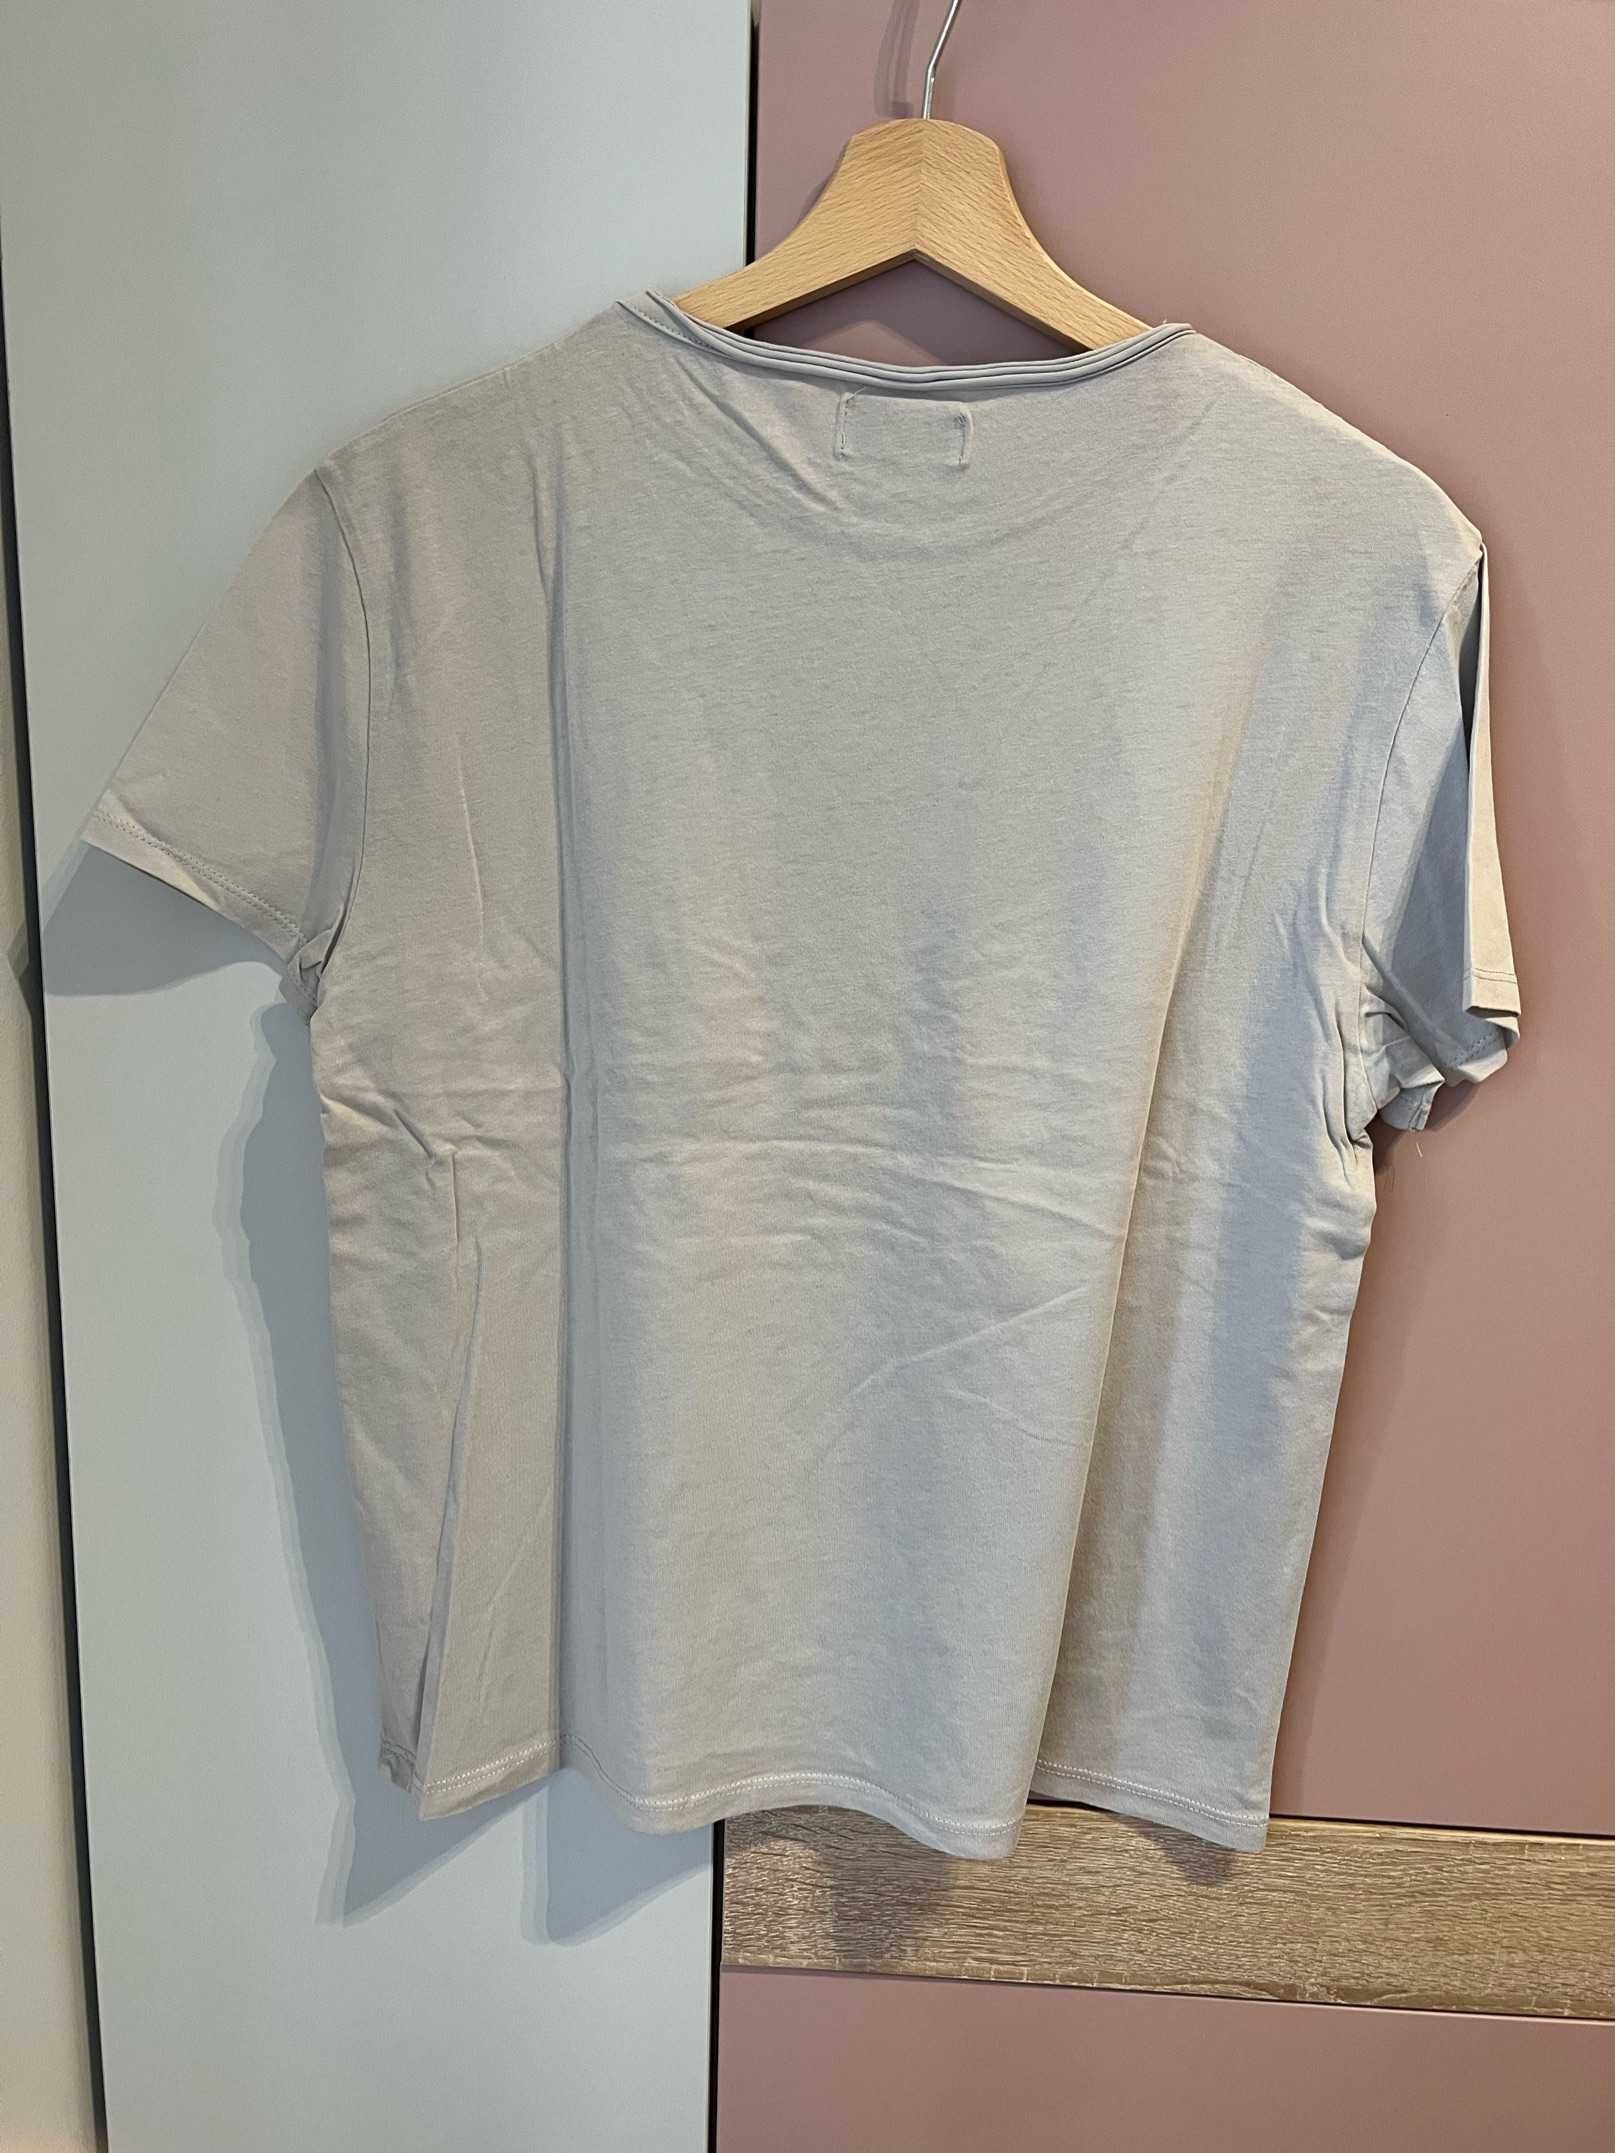 Jasnoszary T-shirt z nadrukiem, Zara - 13-14 lat, 164 cm